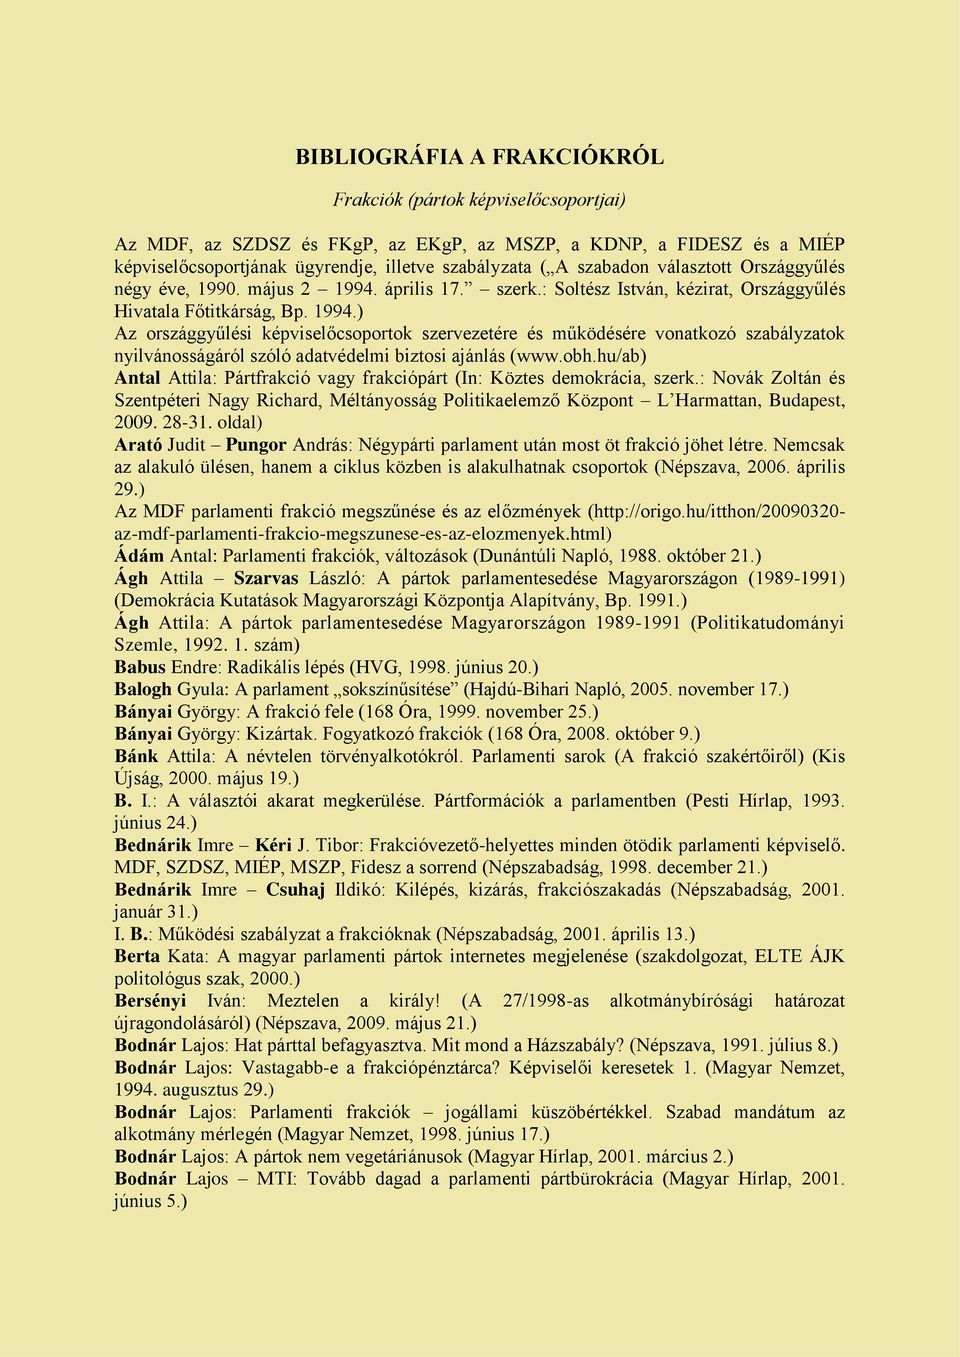 április 17. szerk.: Soltész István, kézirat, Országgyűlés Hivatala Főtitkárság, Bp. 1994.